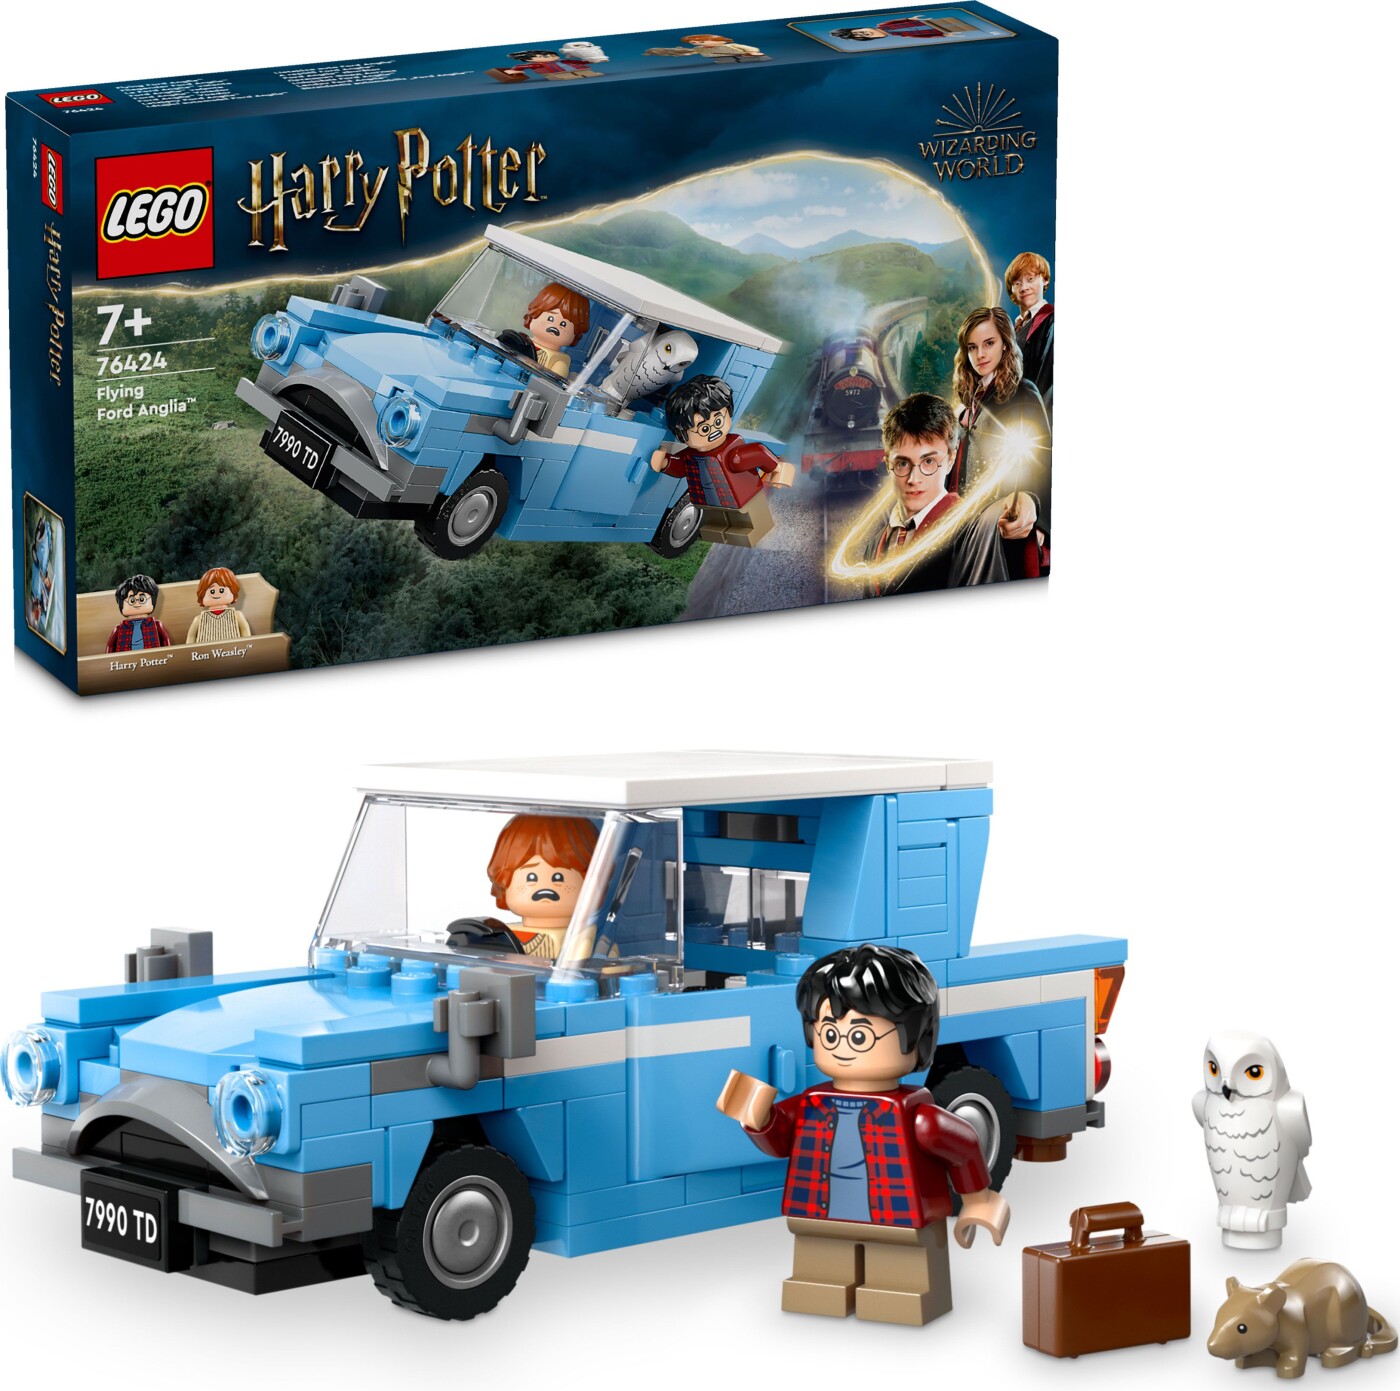 Billede af Lego Harry Potter - Ford Anglia Flyvende Bil - 76424 hos Gucca.dk